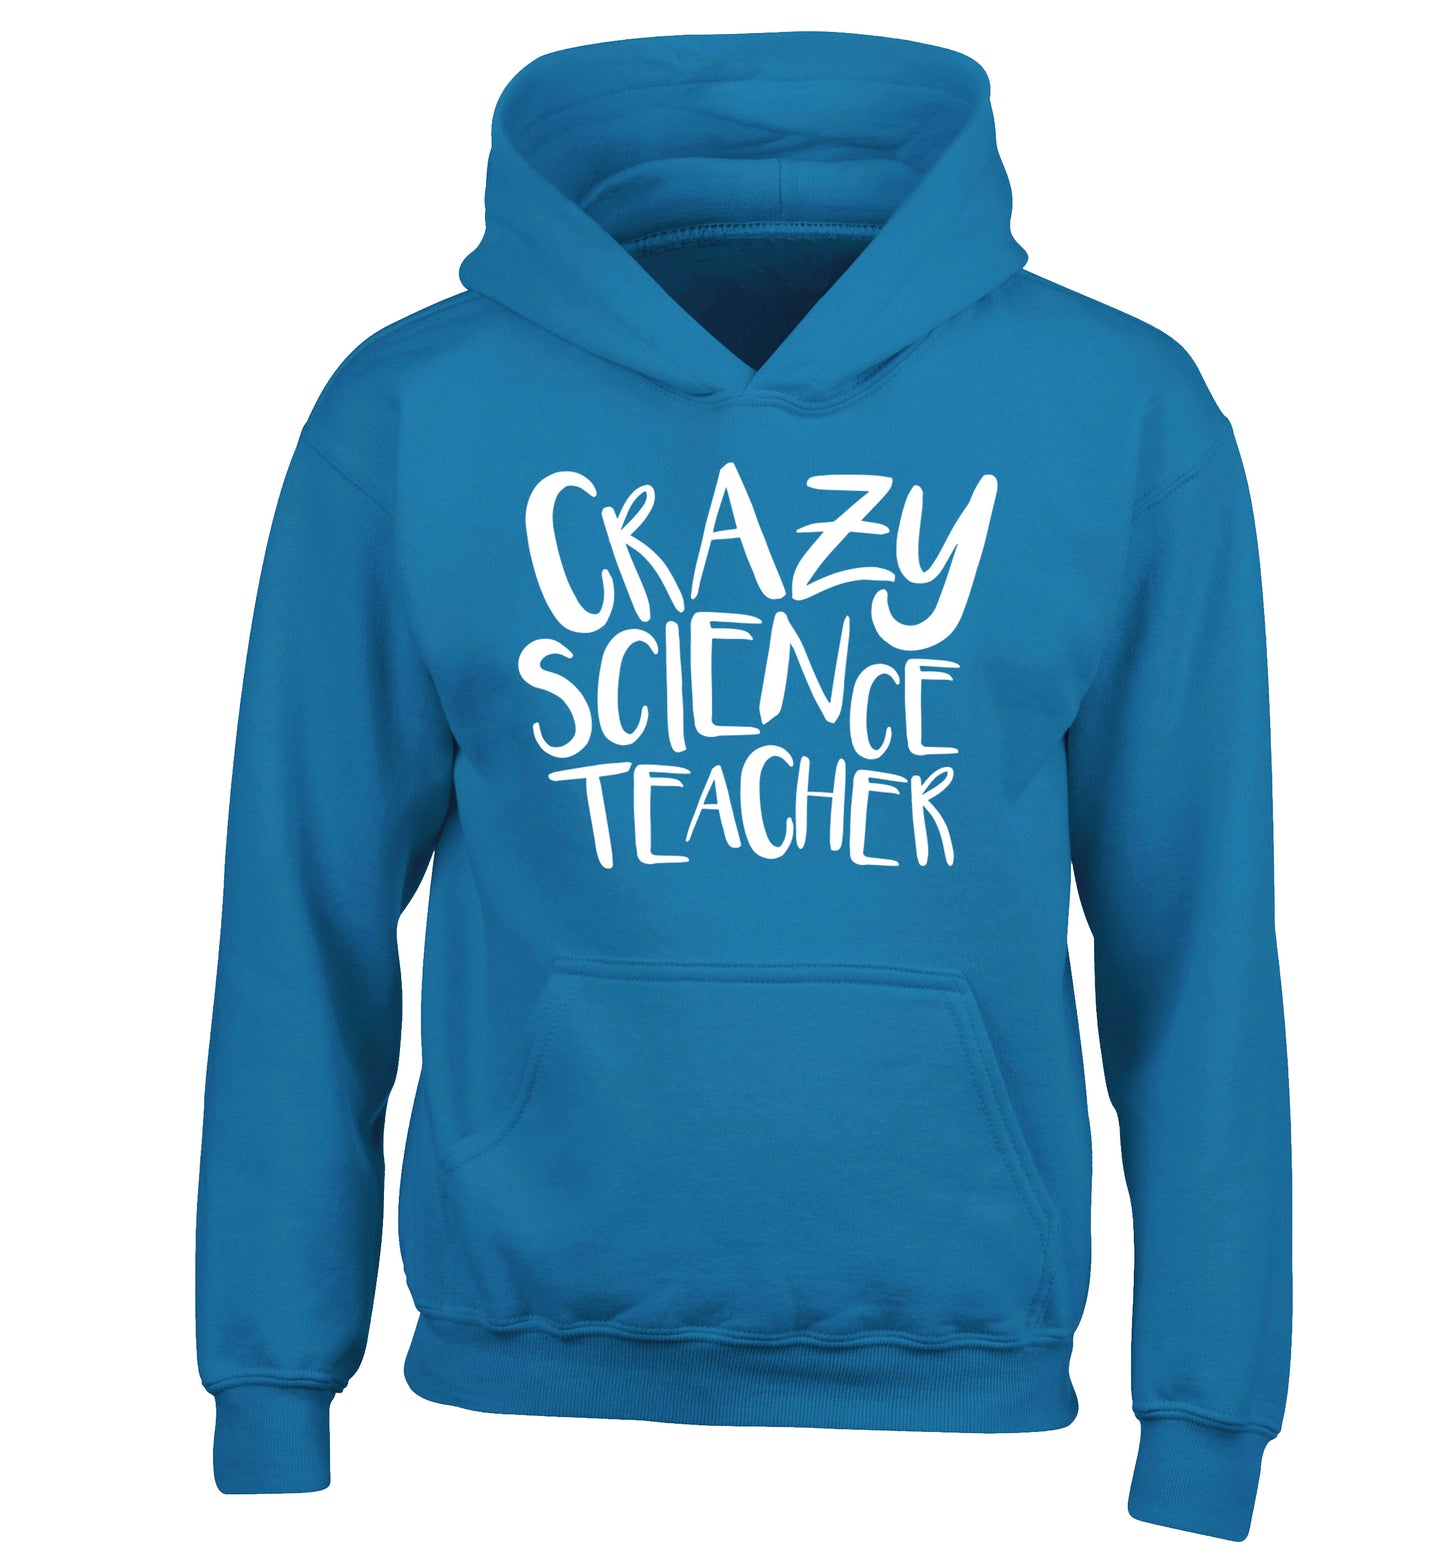 Crazy science teacher children's blue hoodie 12-13 Years